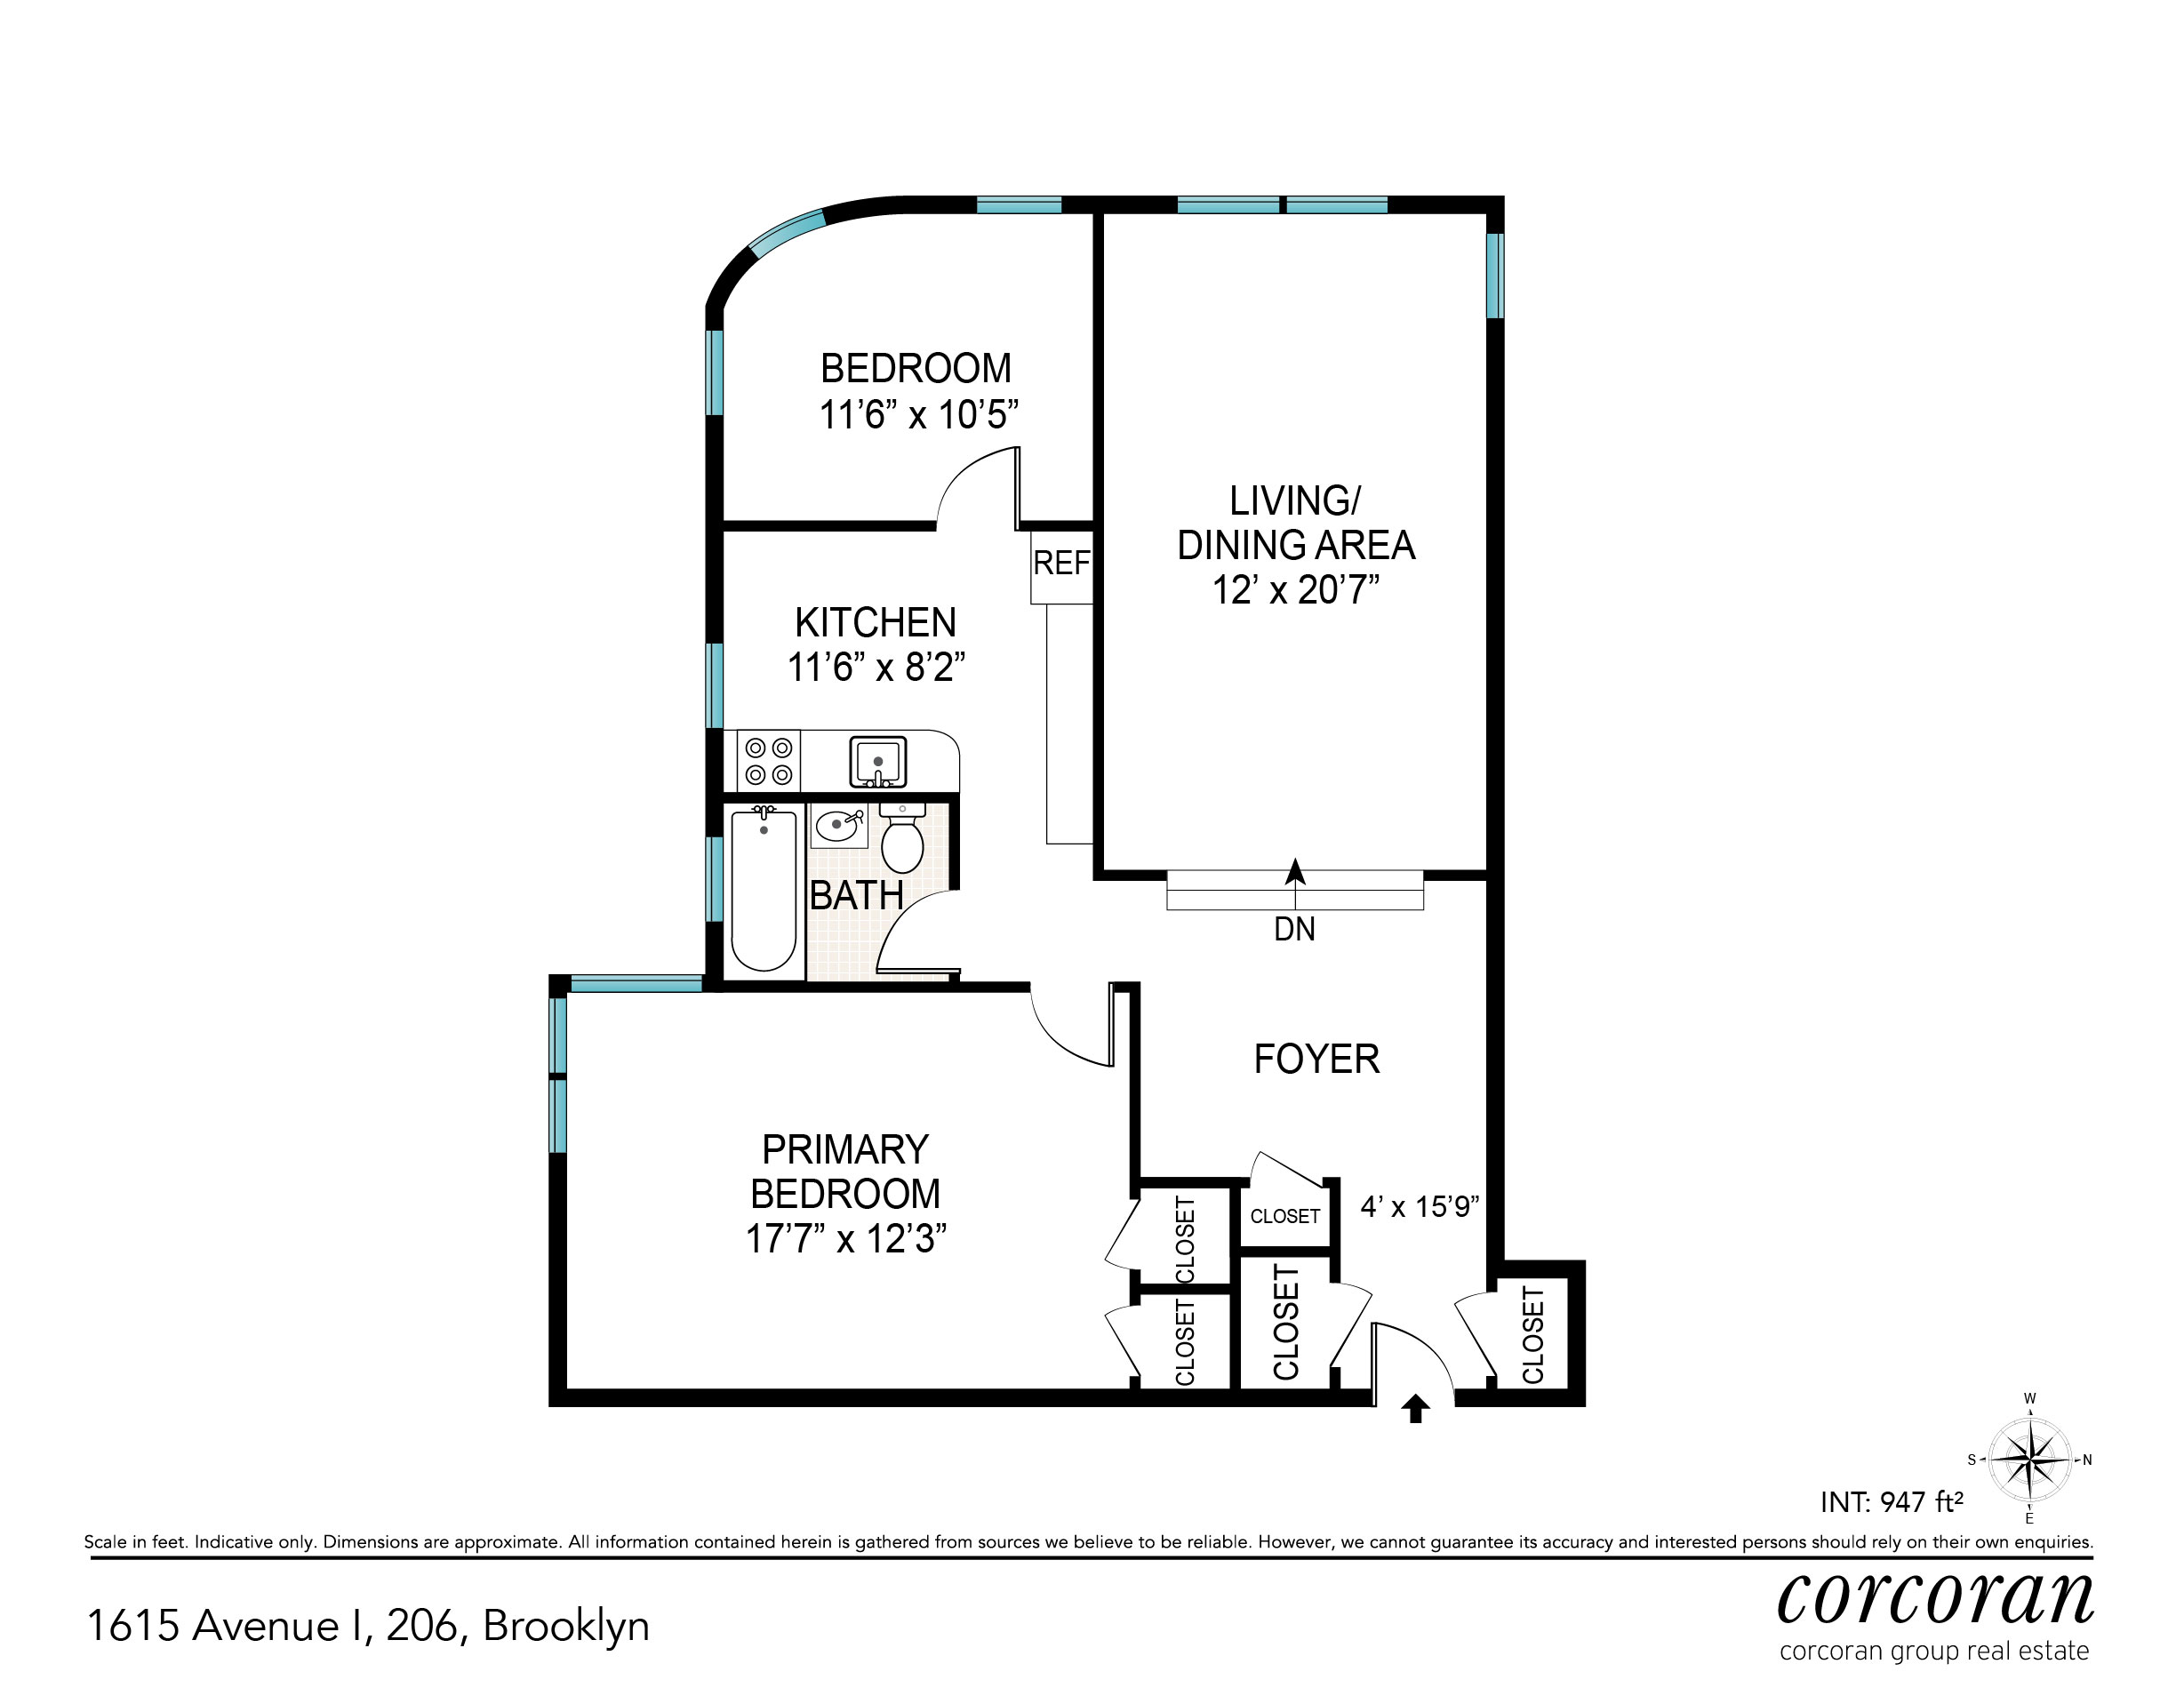 Floorplan for 1615 Ave I, 206